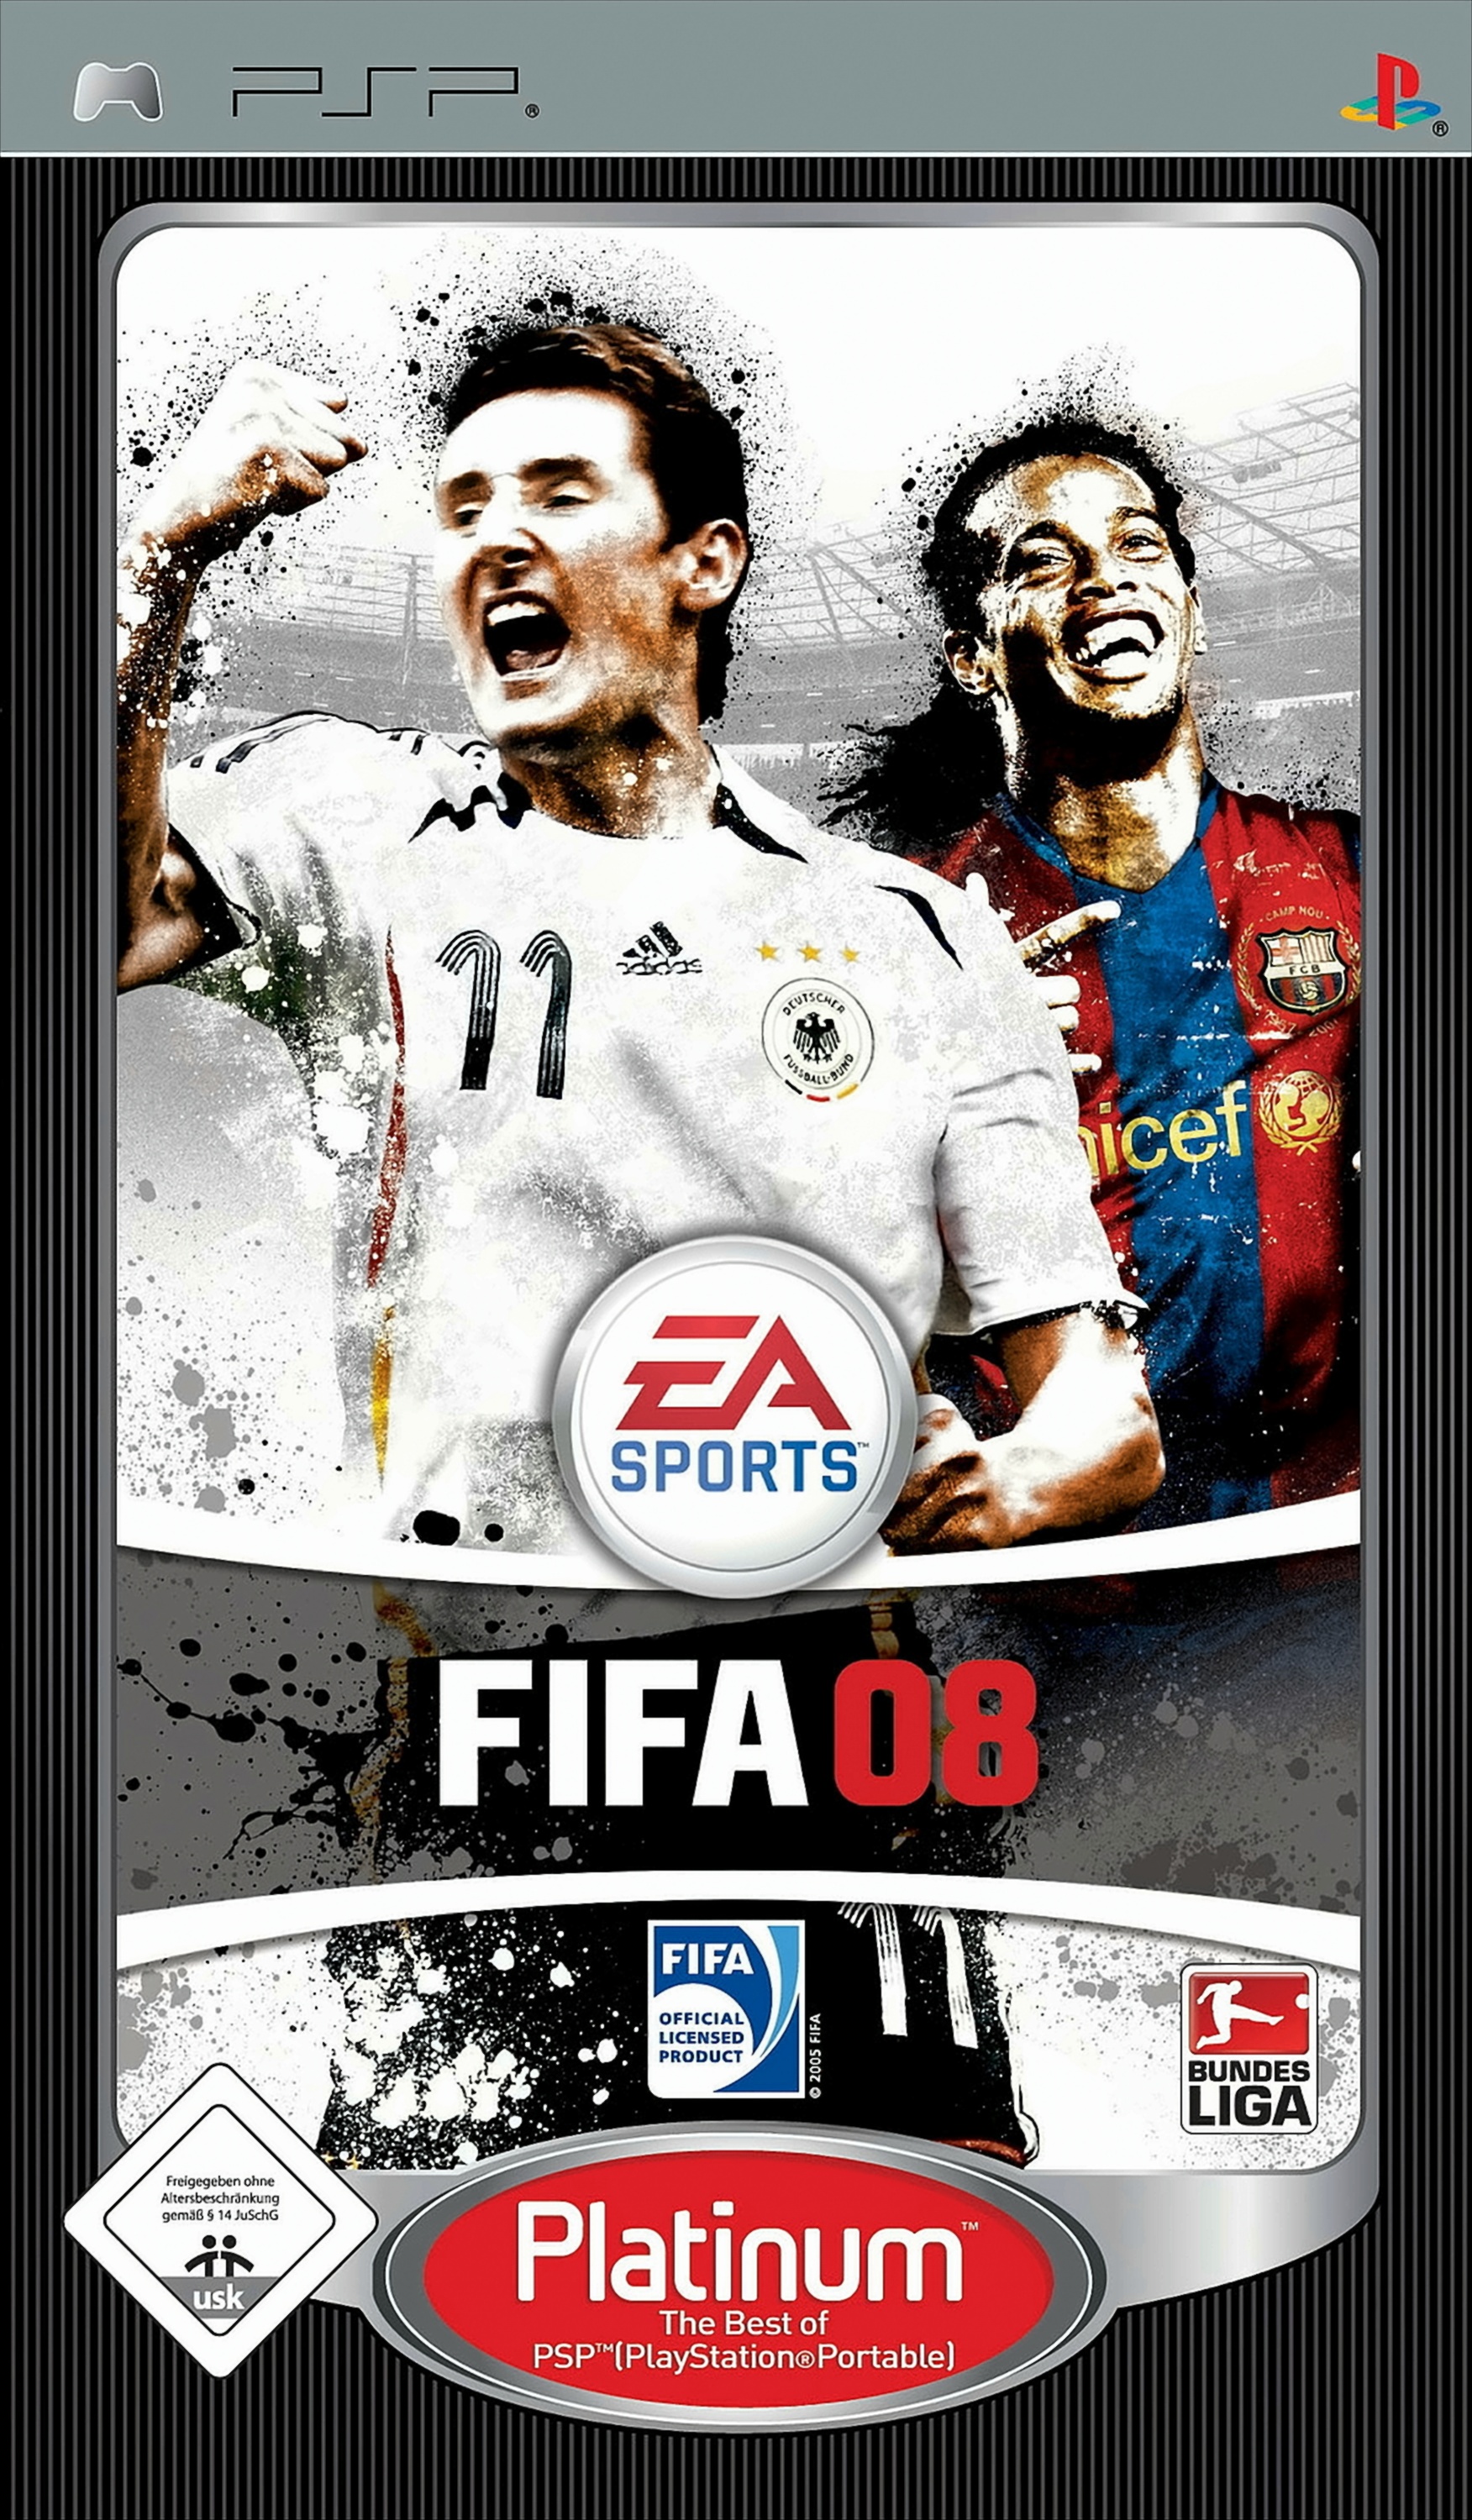 FIFA 08 - Platinum